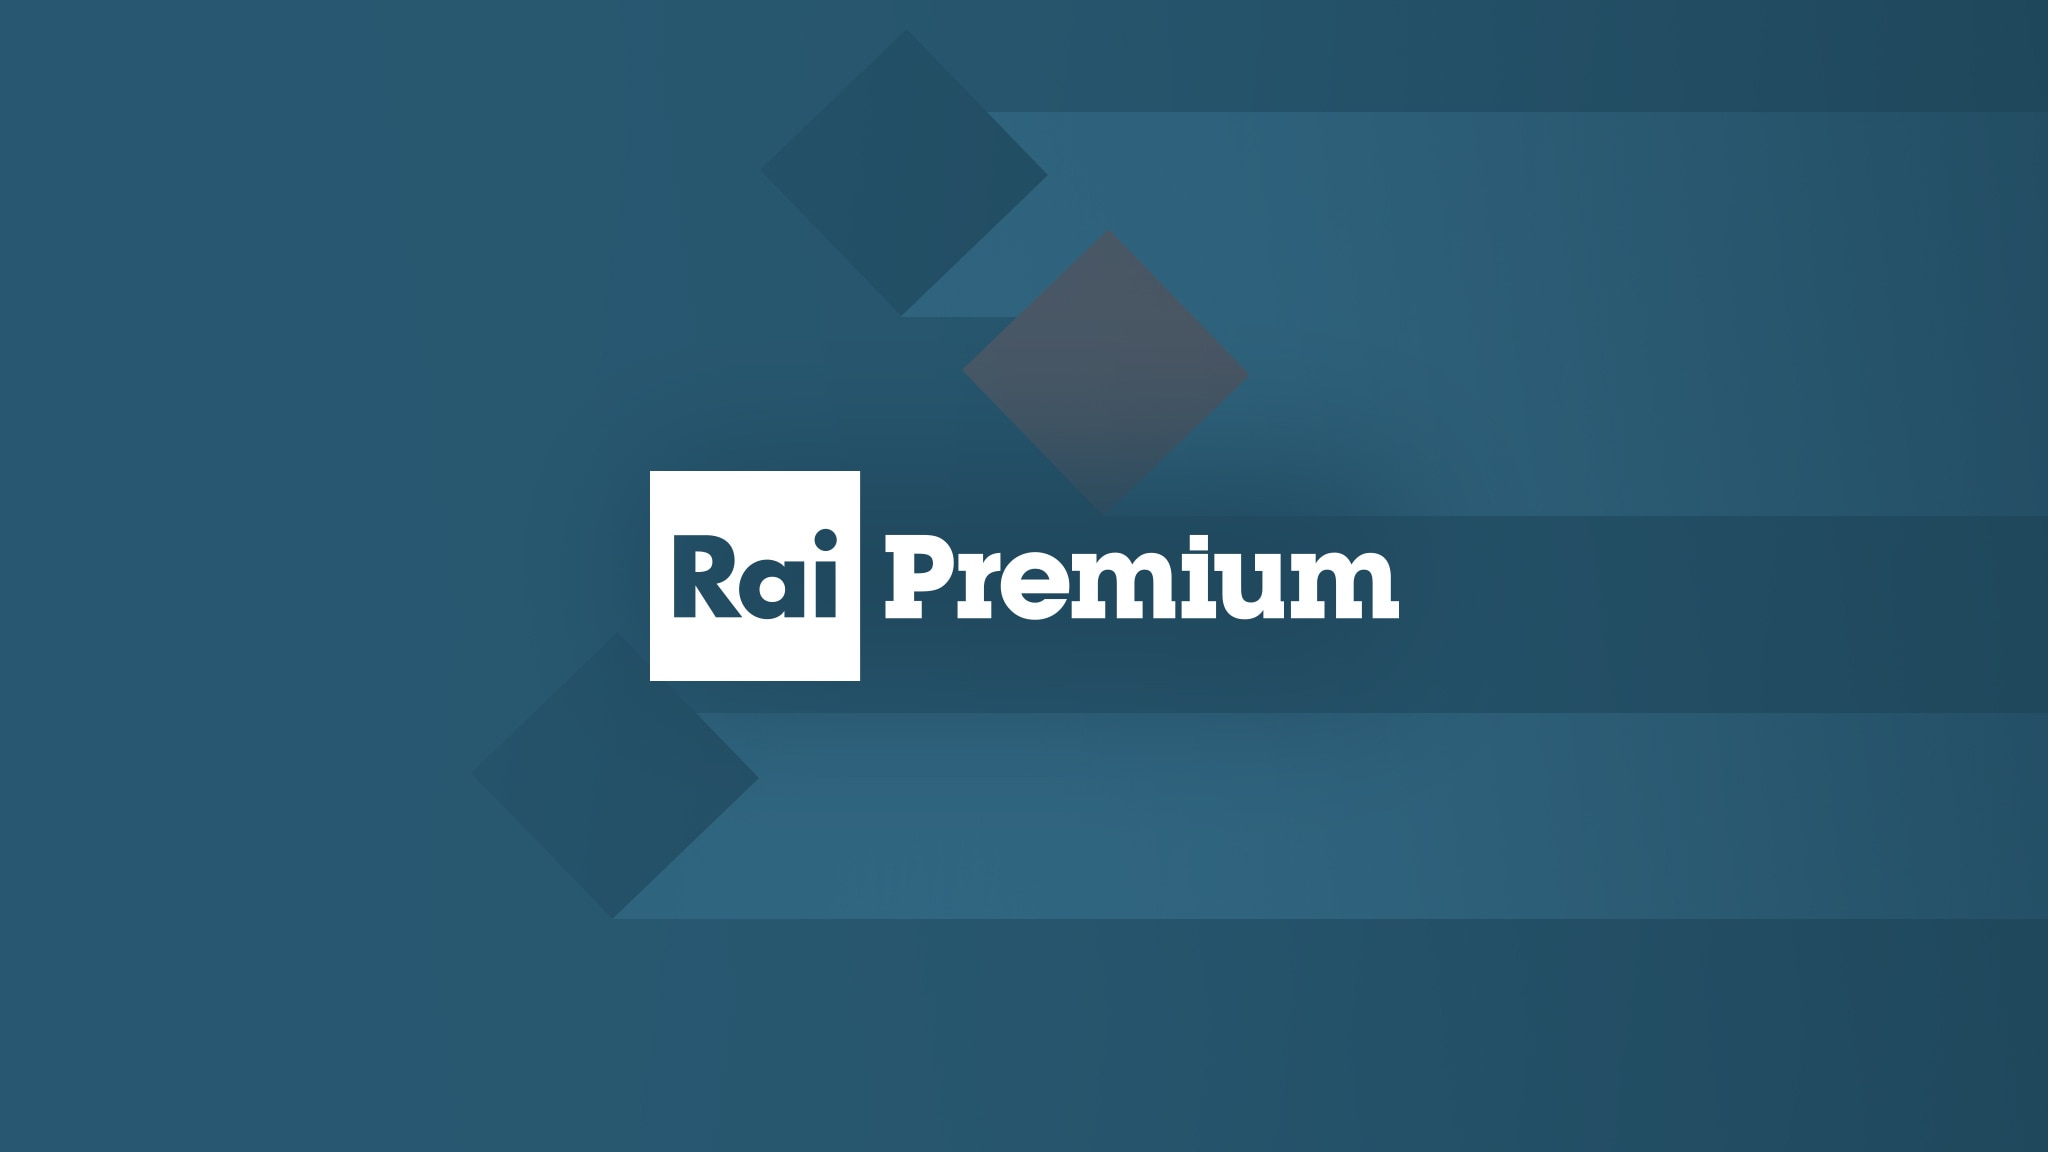 Rai Premium Villa Arzilla - Telesorriso p.6